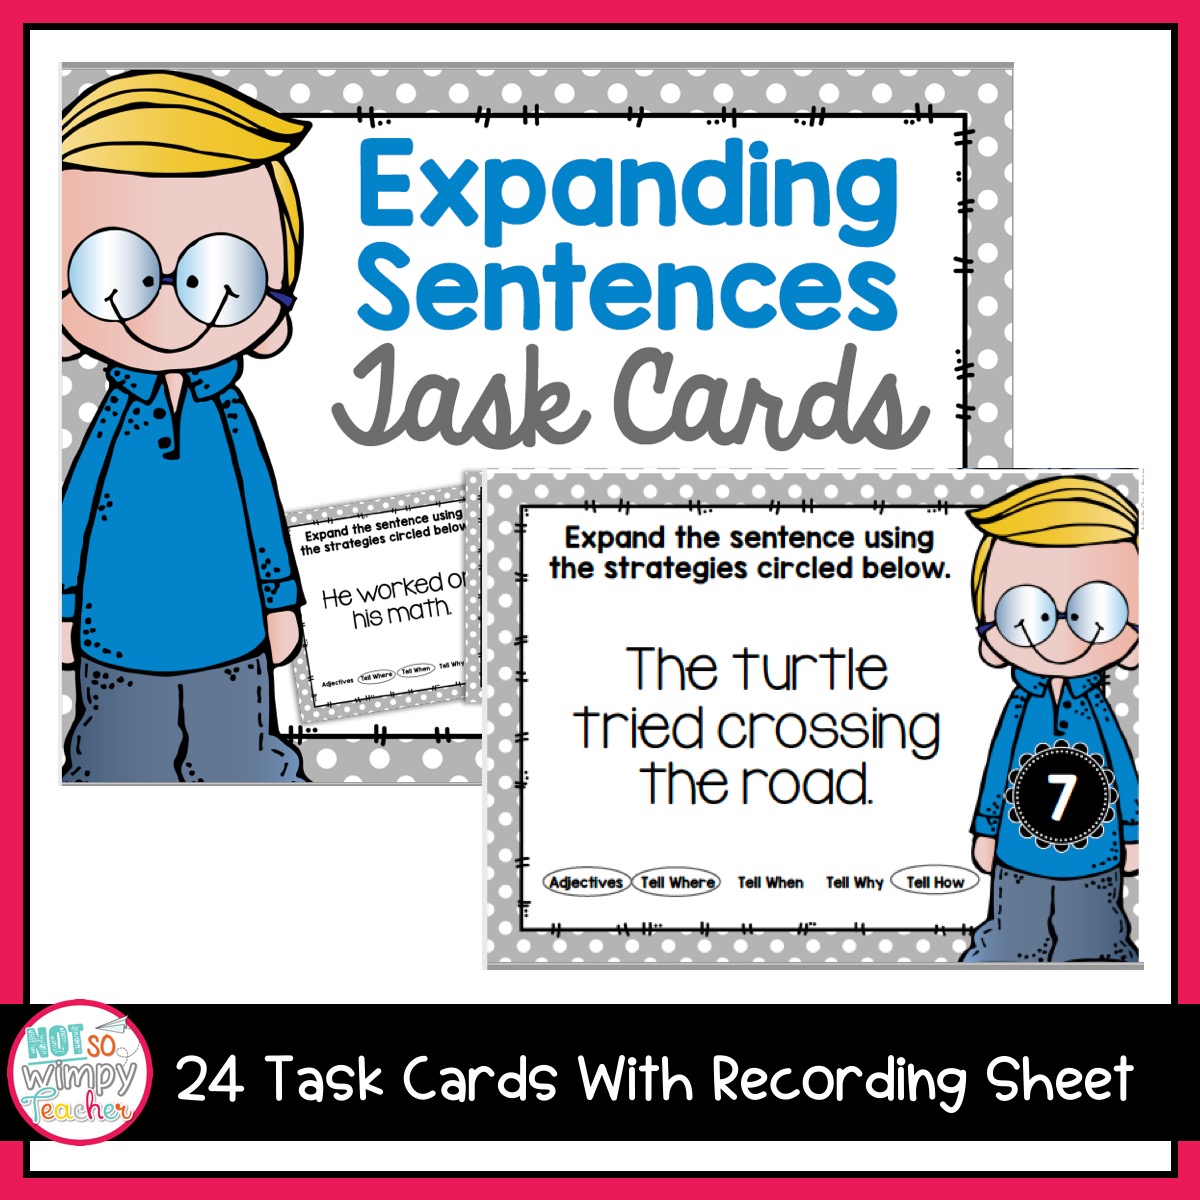 grammar-fifth-grade-activities-expand-sentences-not-so-wimpy-teacher